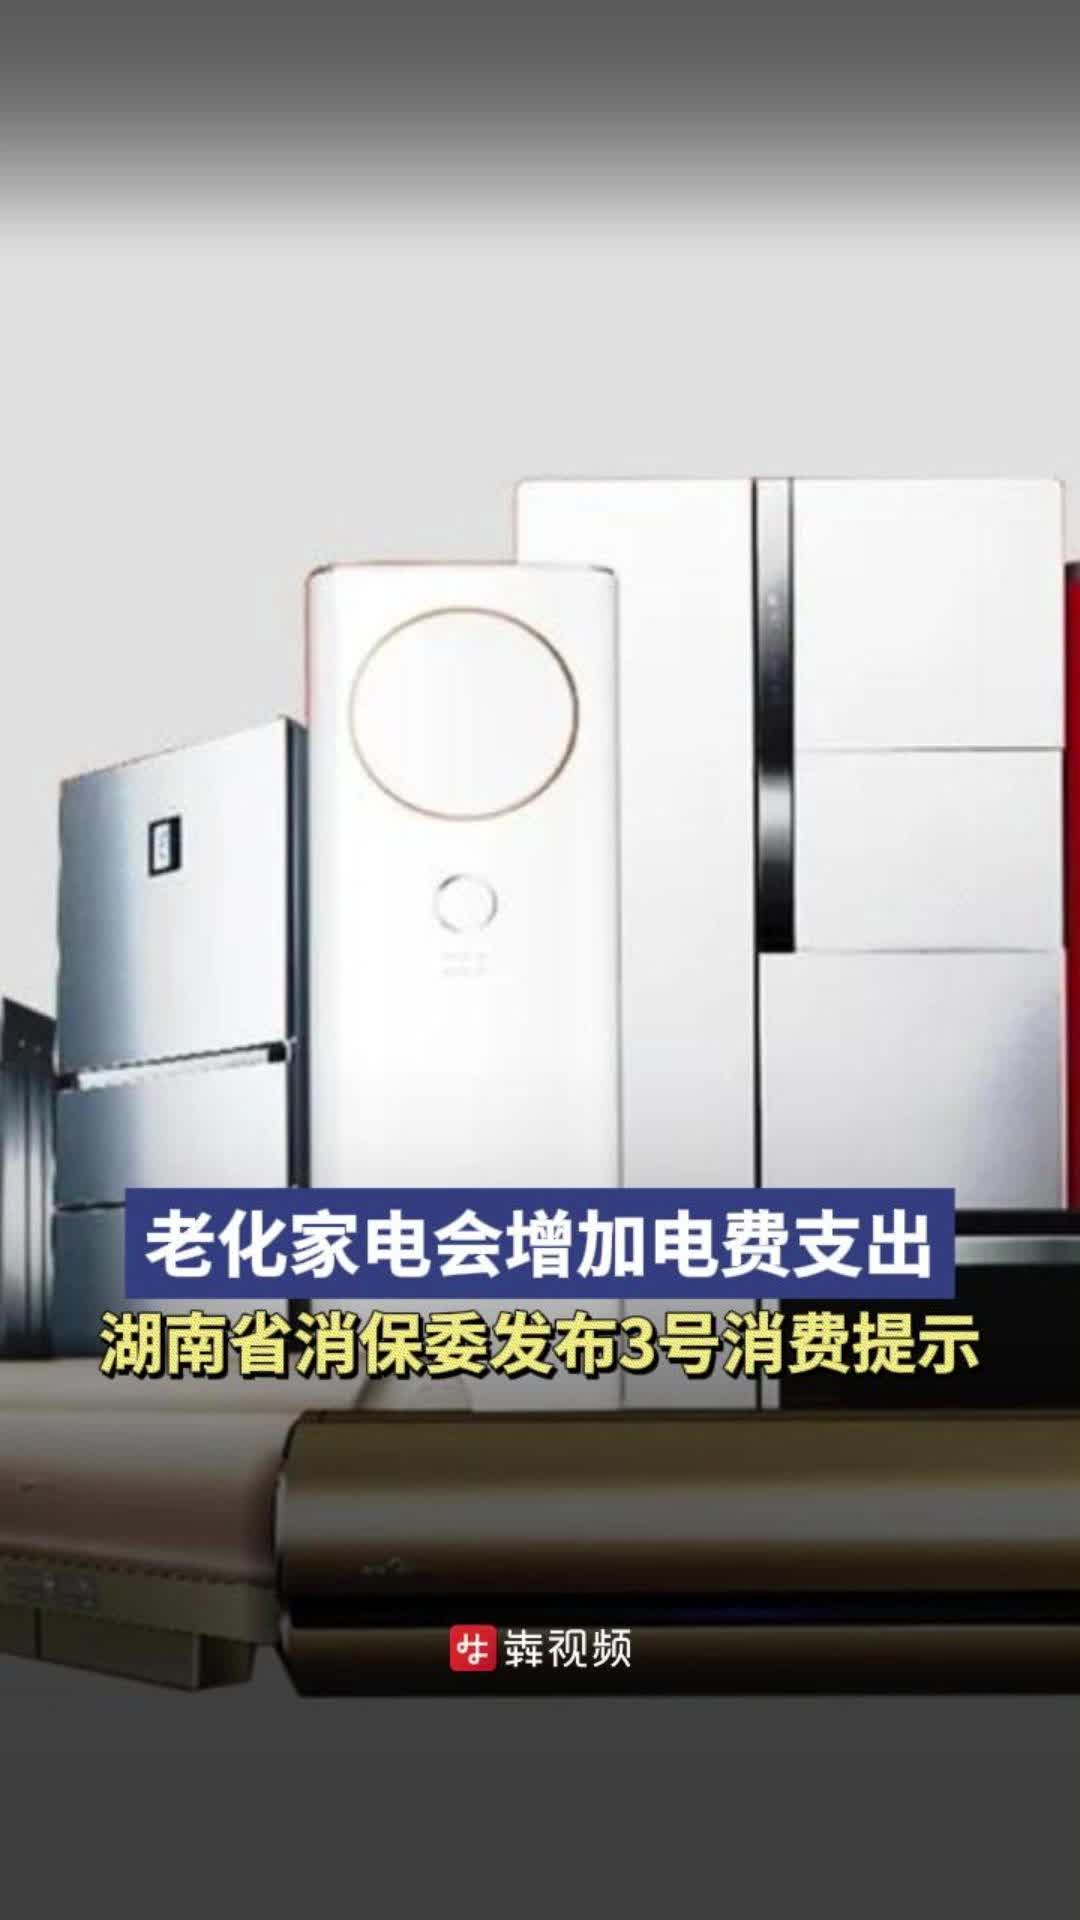 老化家电会增加电费支出，湖南省消保委发布3号消费提示